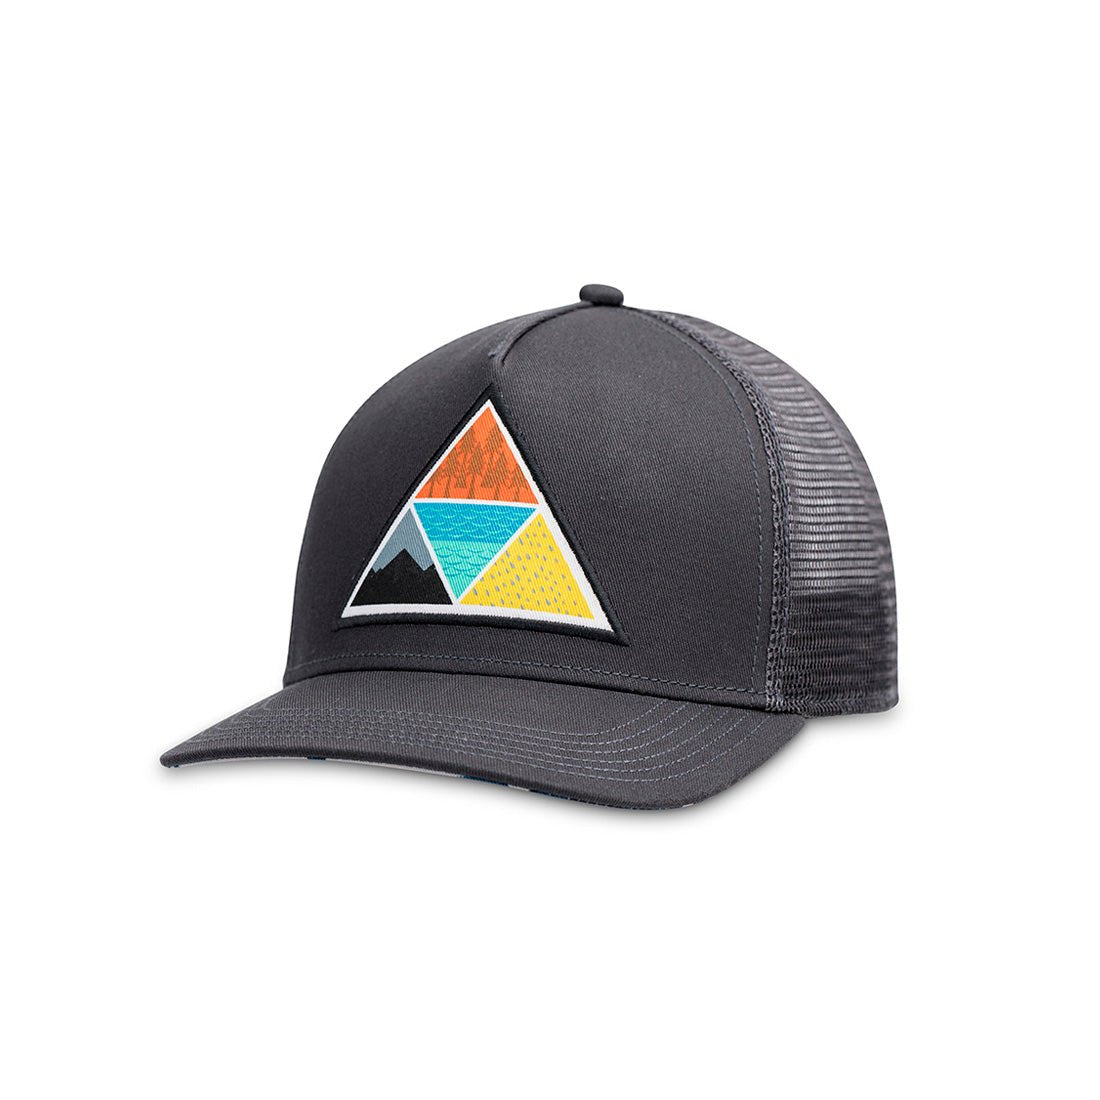 Vortex Trucker Hat by Pistil Designs